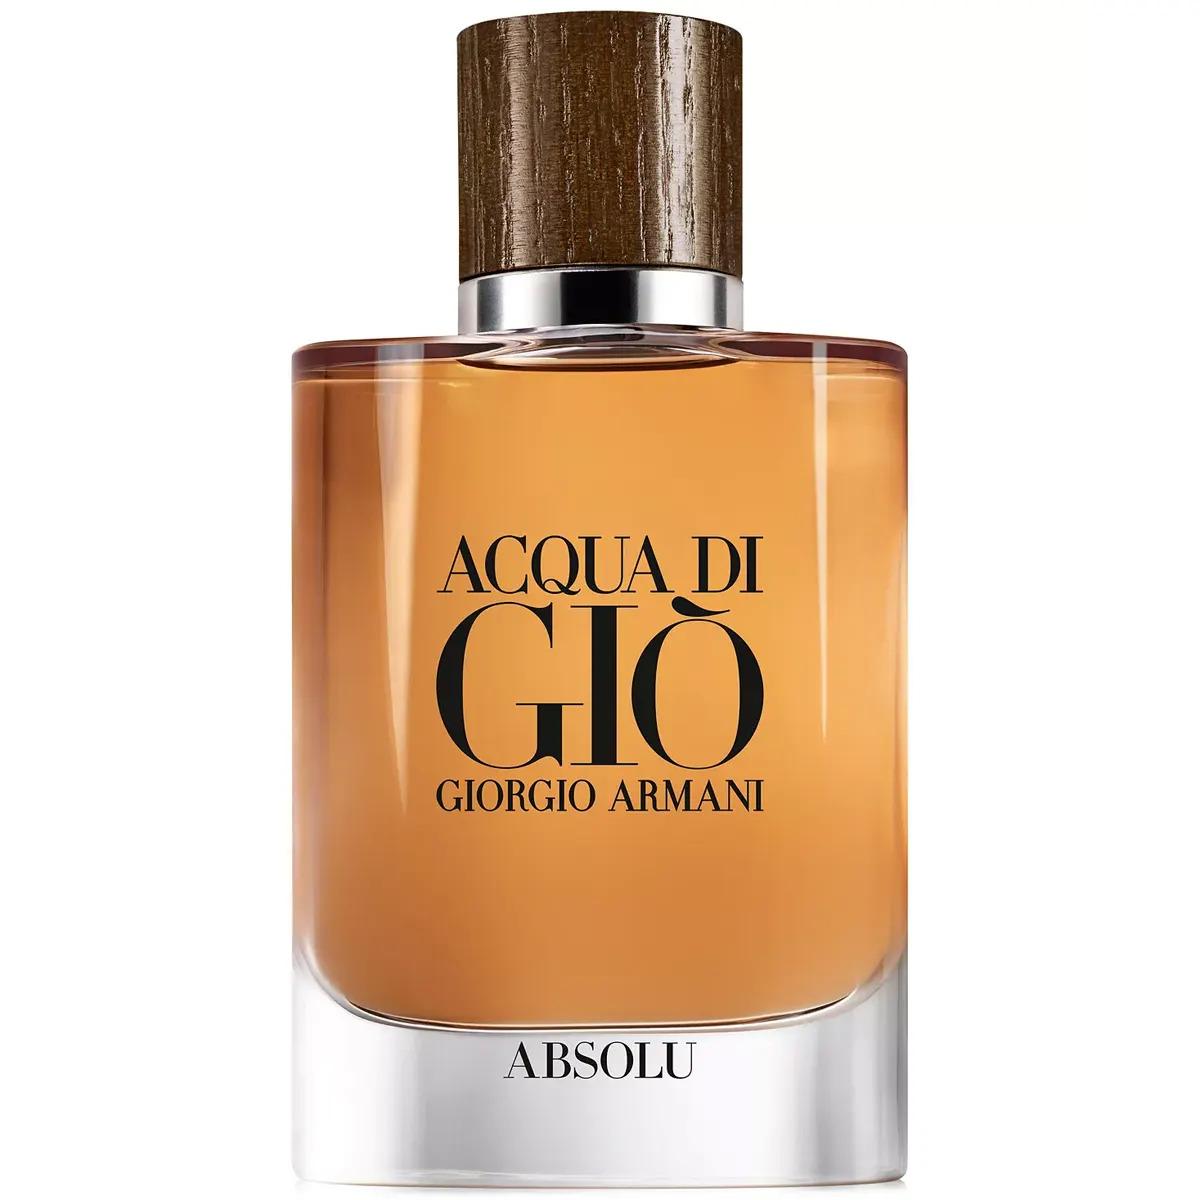 Giorgio Armani Acqua di Gio Absolu Eau de Parfum Spray for $59.50 Shipped